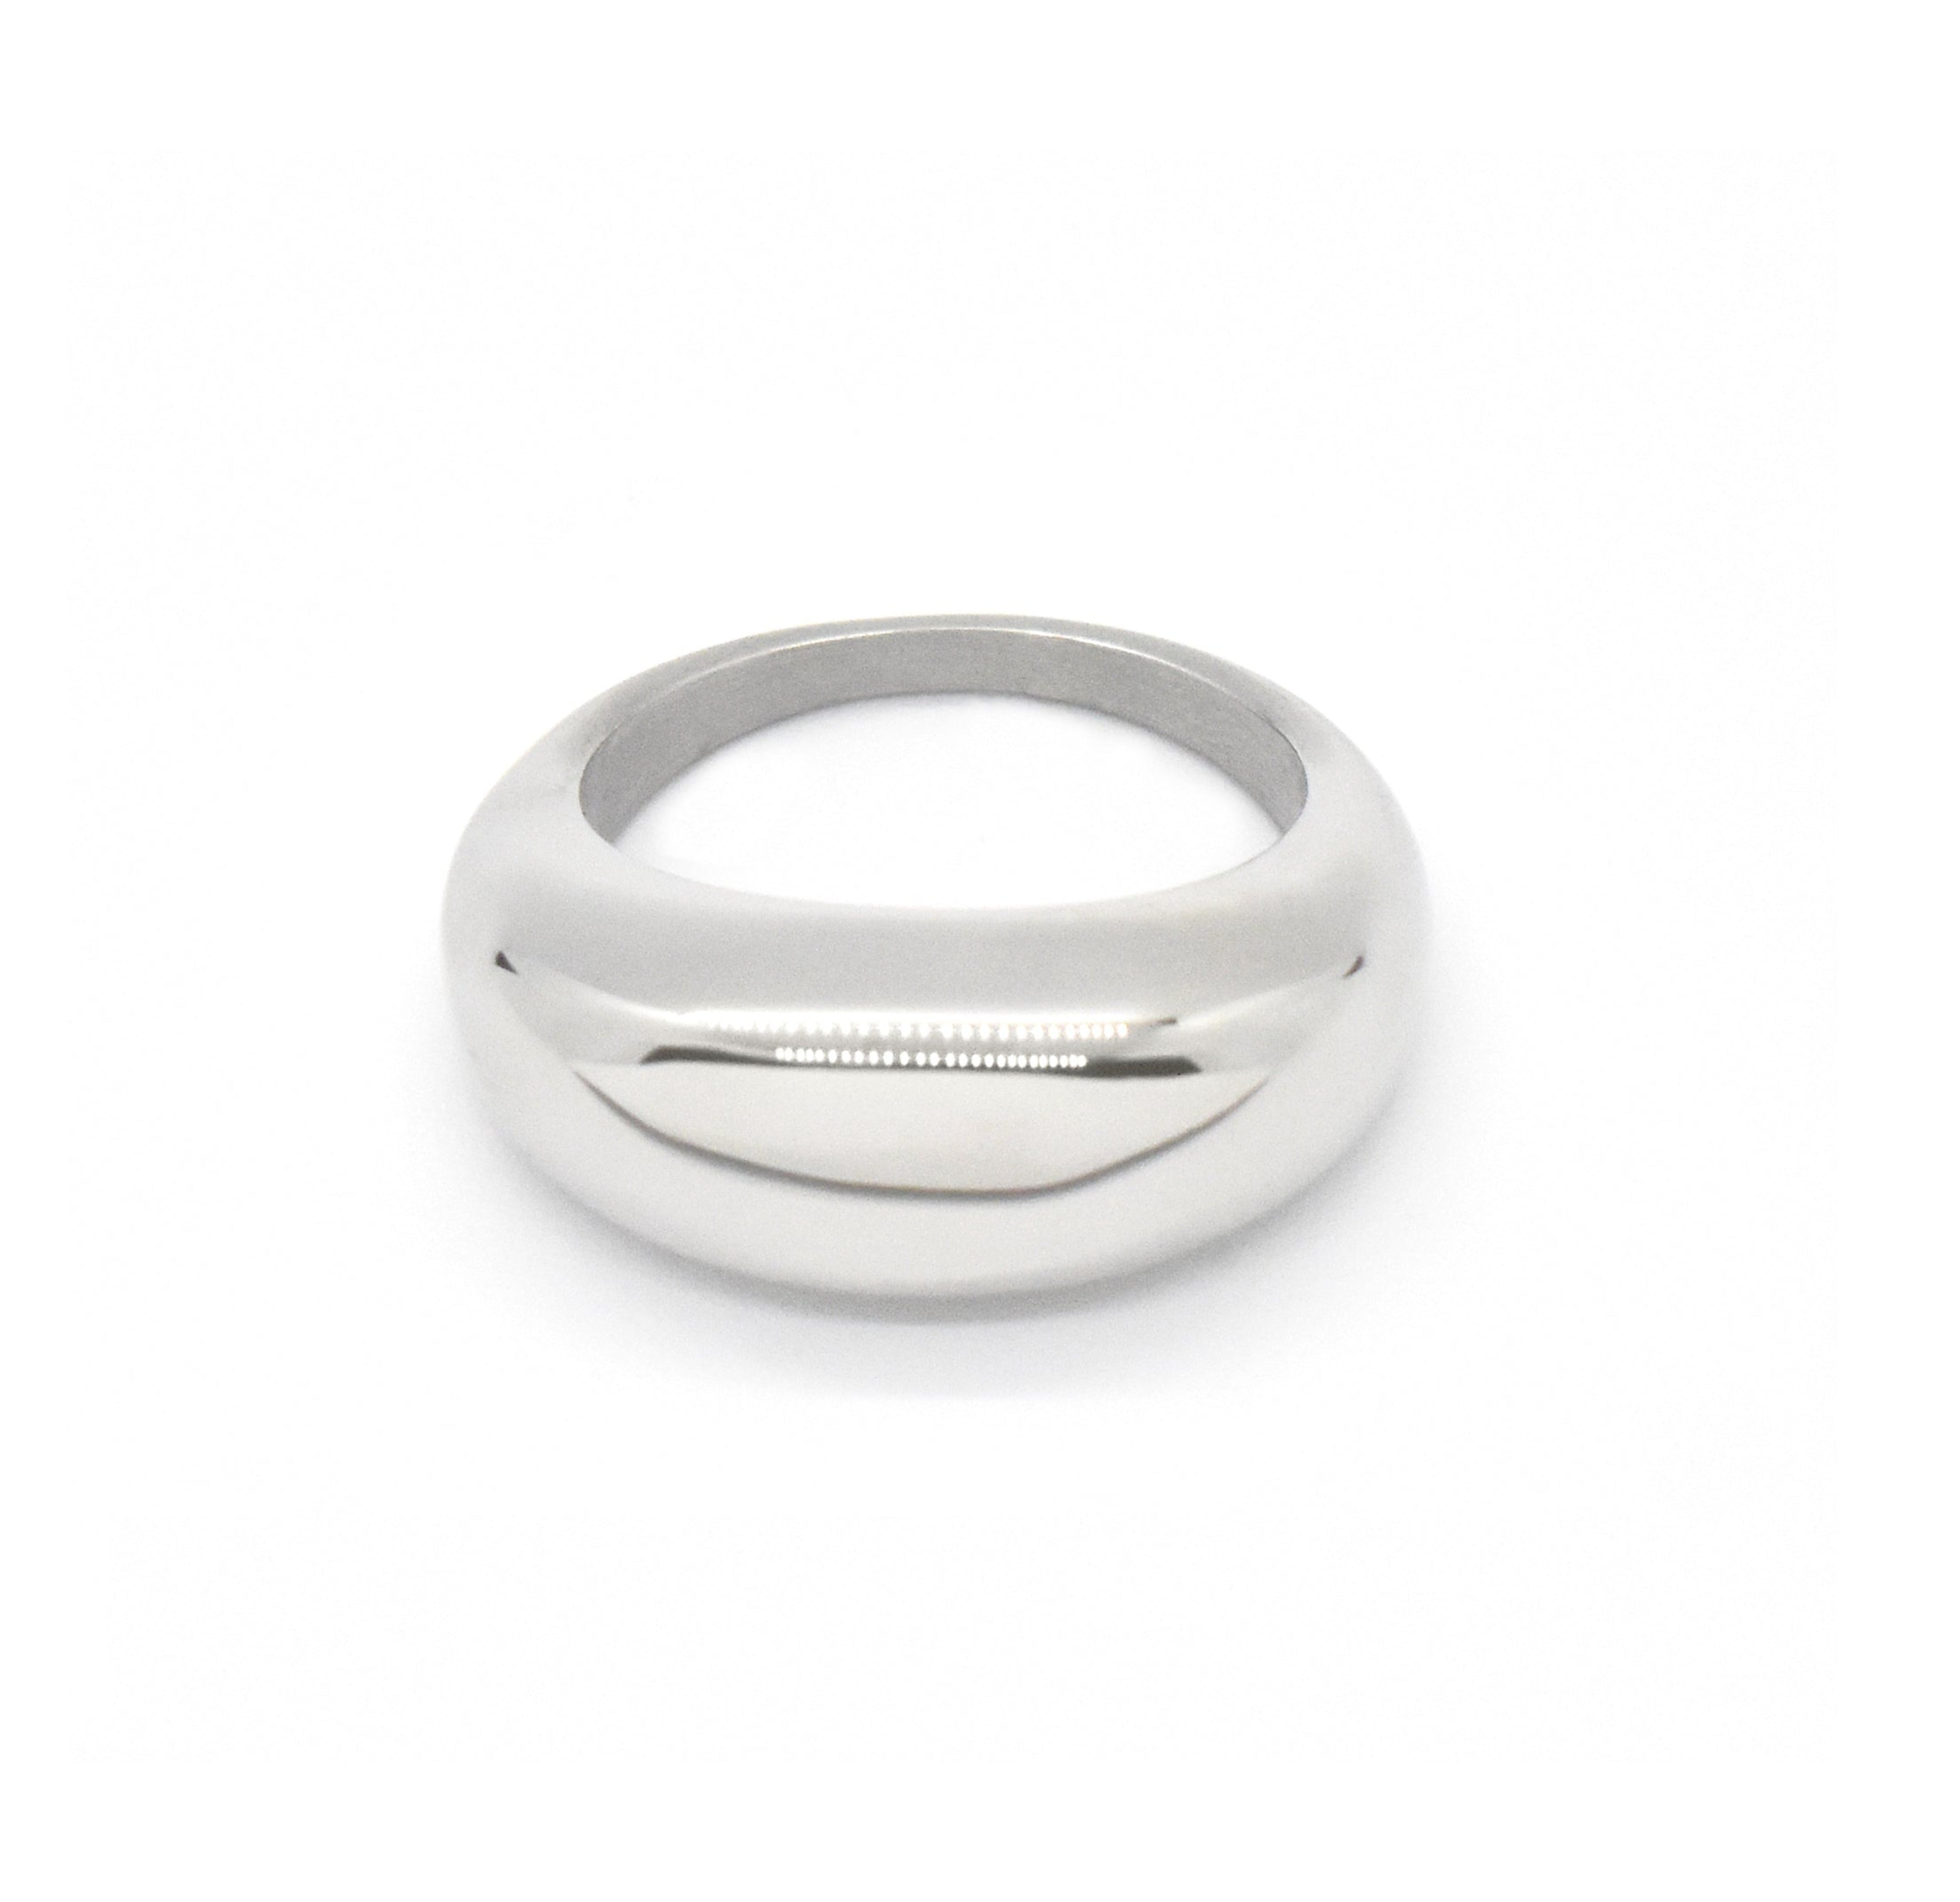 silver capri dome ring. Silver jewelry tarnish free